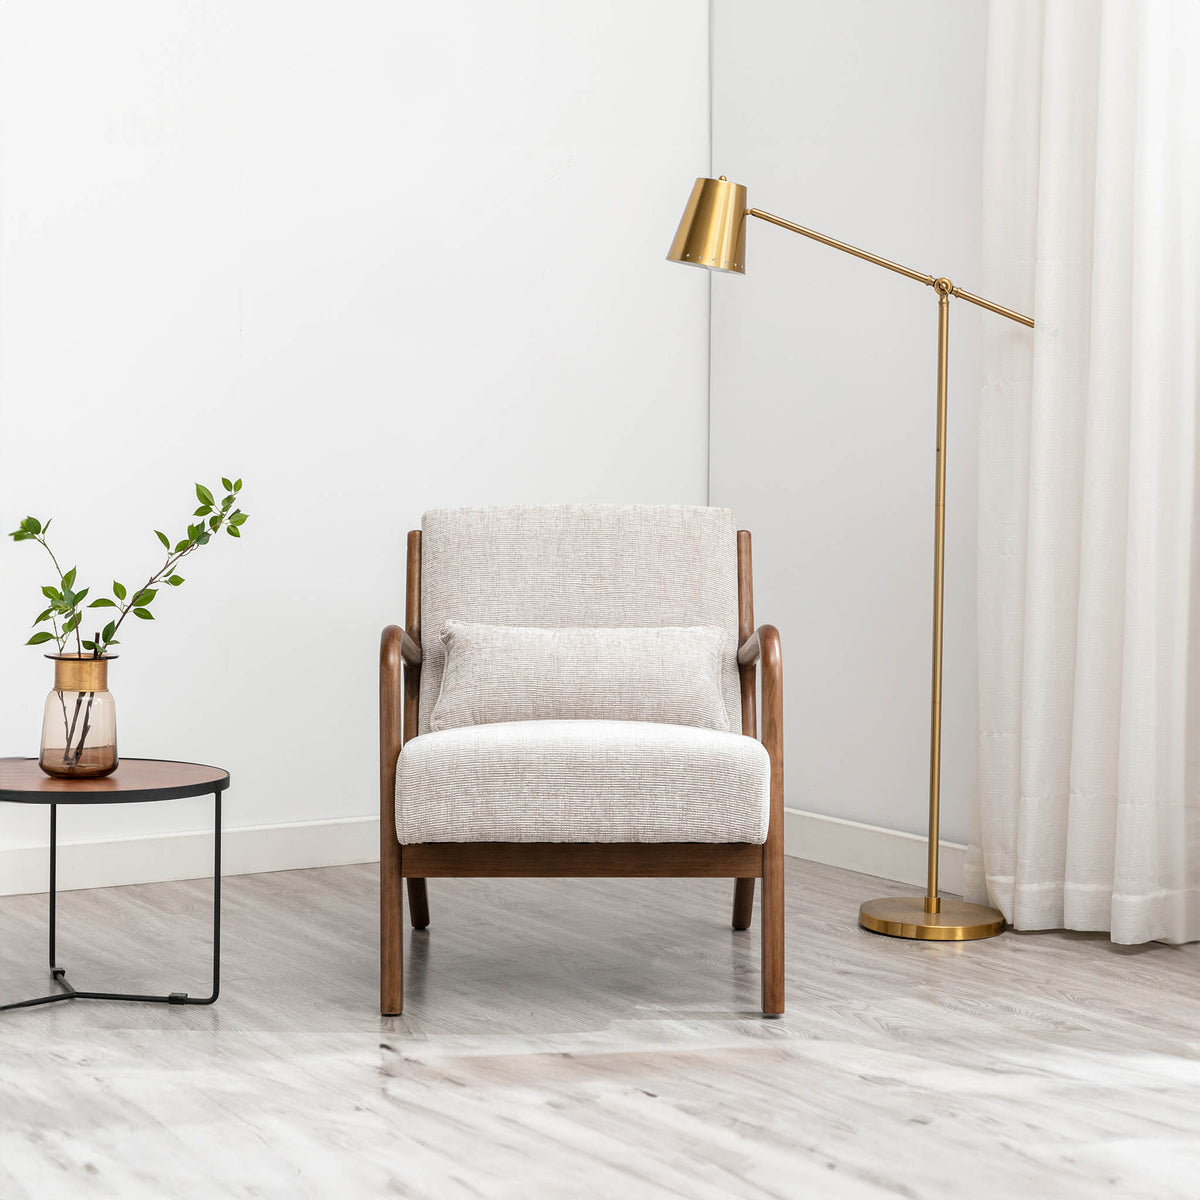 Khali Natural Upholstered Modern Vintage Armchair for living room